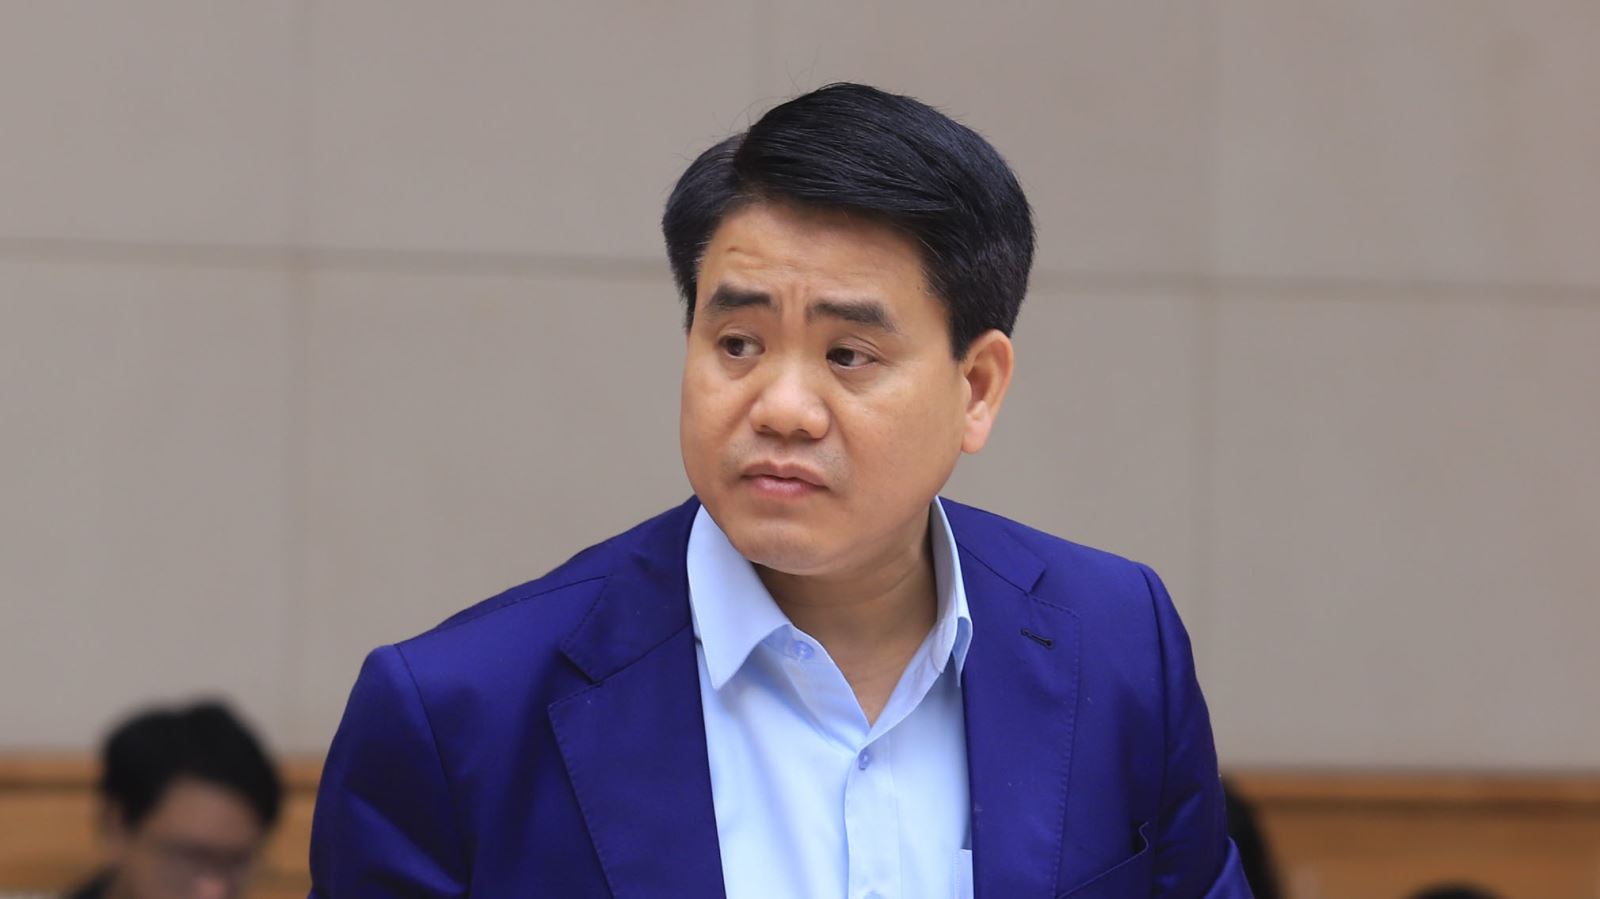 Ông Nguyễn Đức Chung bị tạm đình chỉ công tác để xác minh, điều tra liên quan đến 3 vụ án